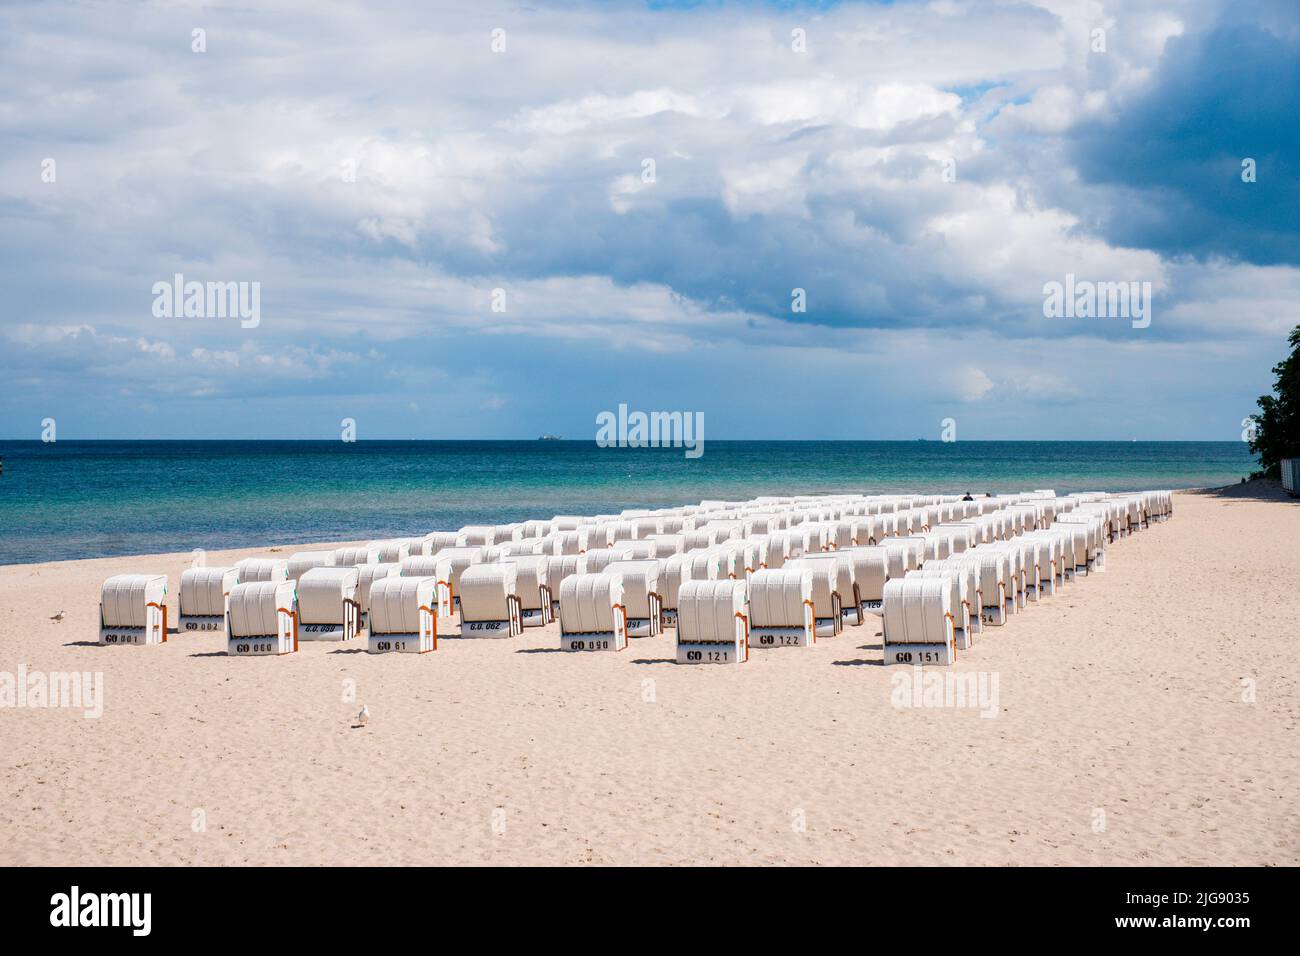 Chaises de plage alignées côte à côte sur la plage de la mer Baltique Banque D'Images